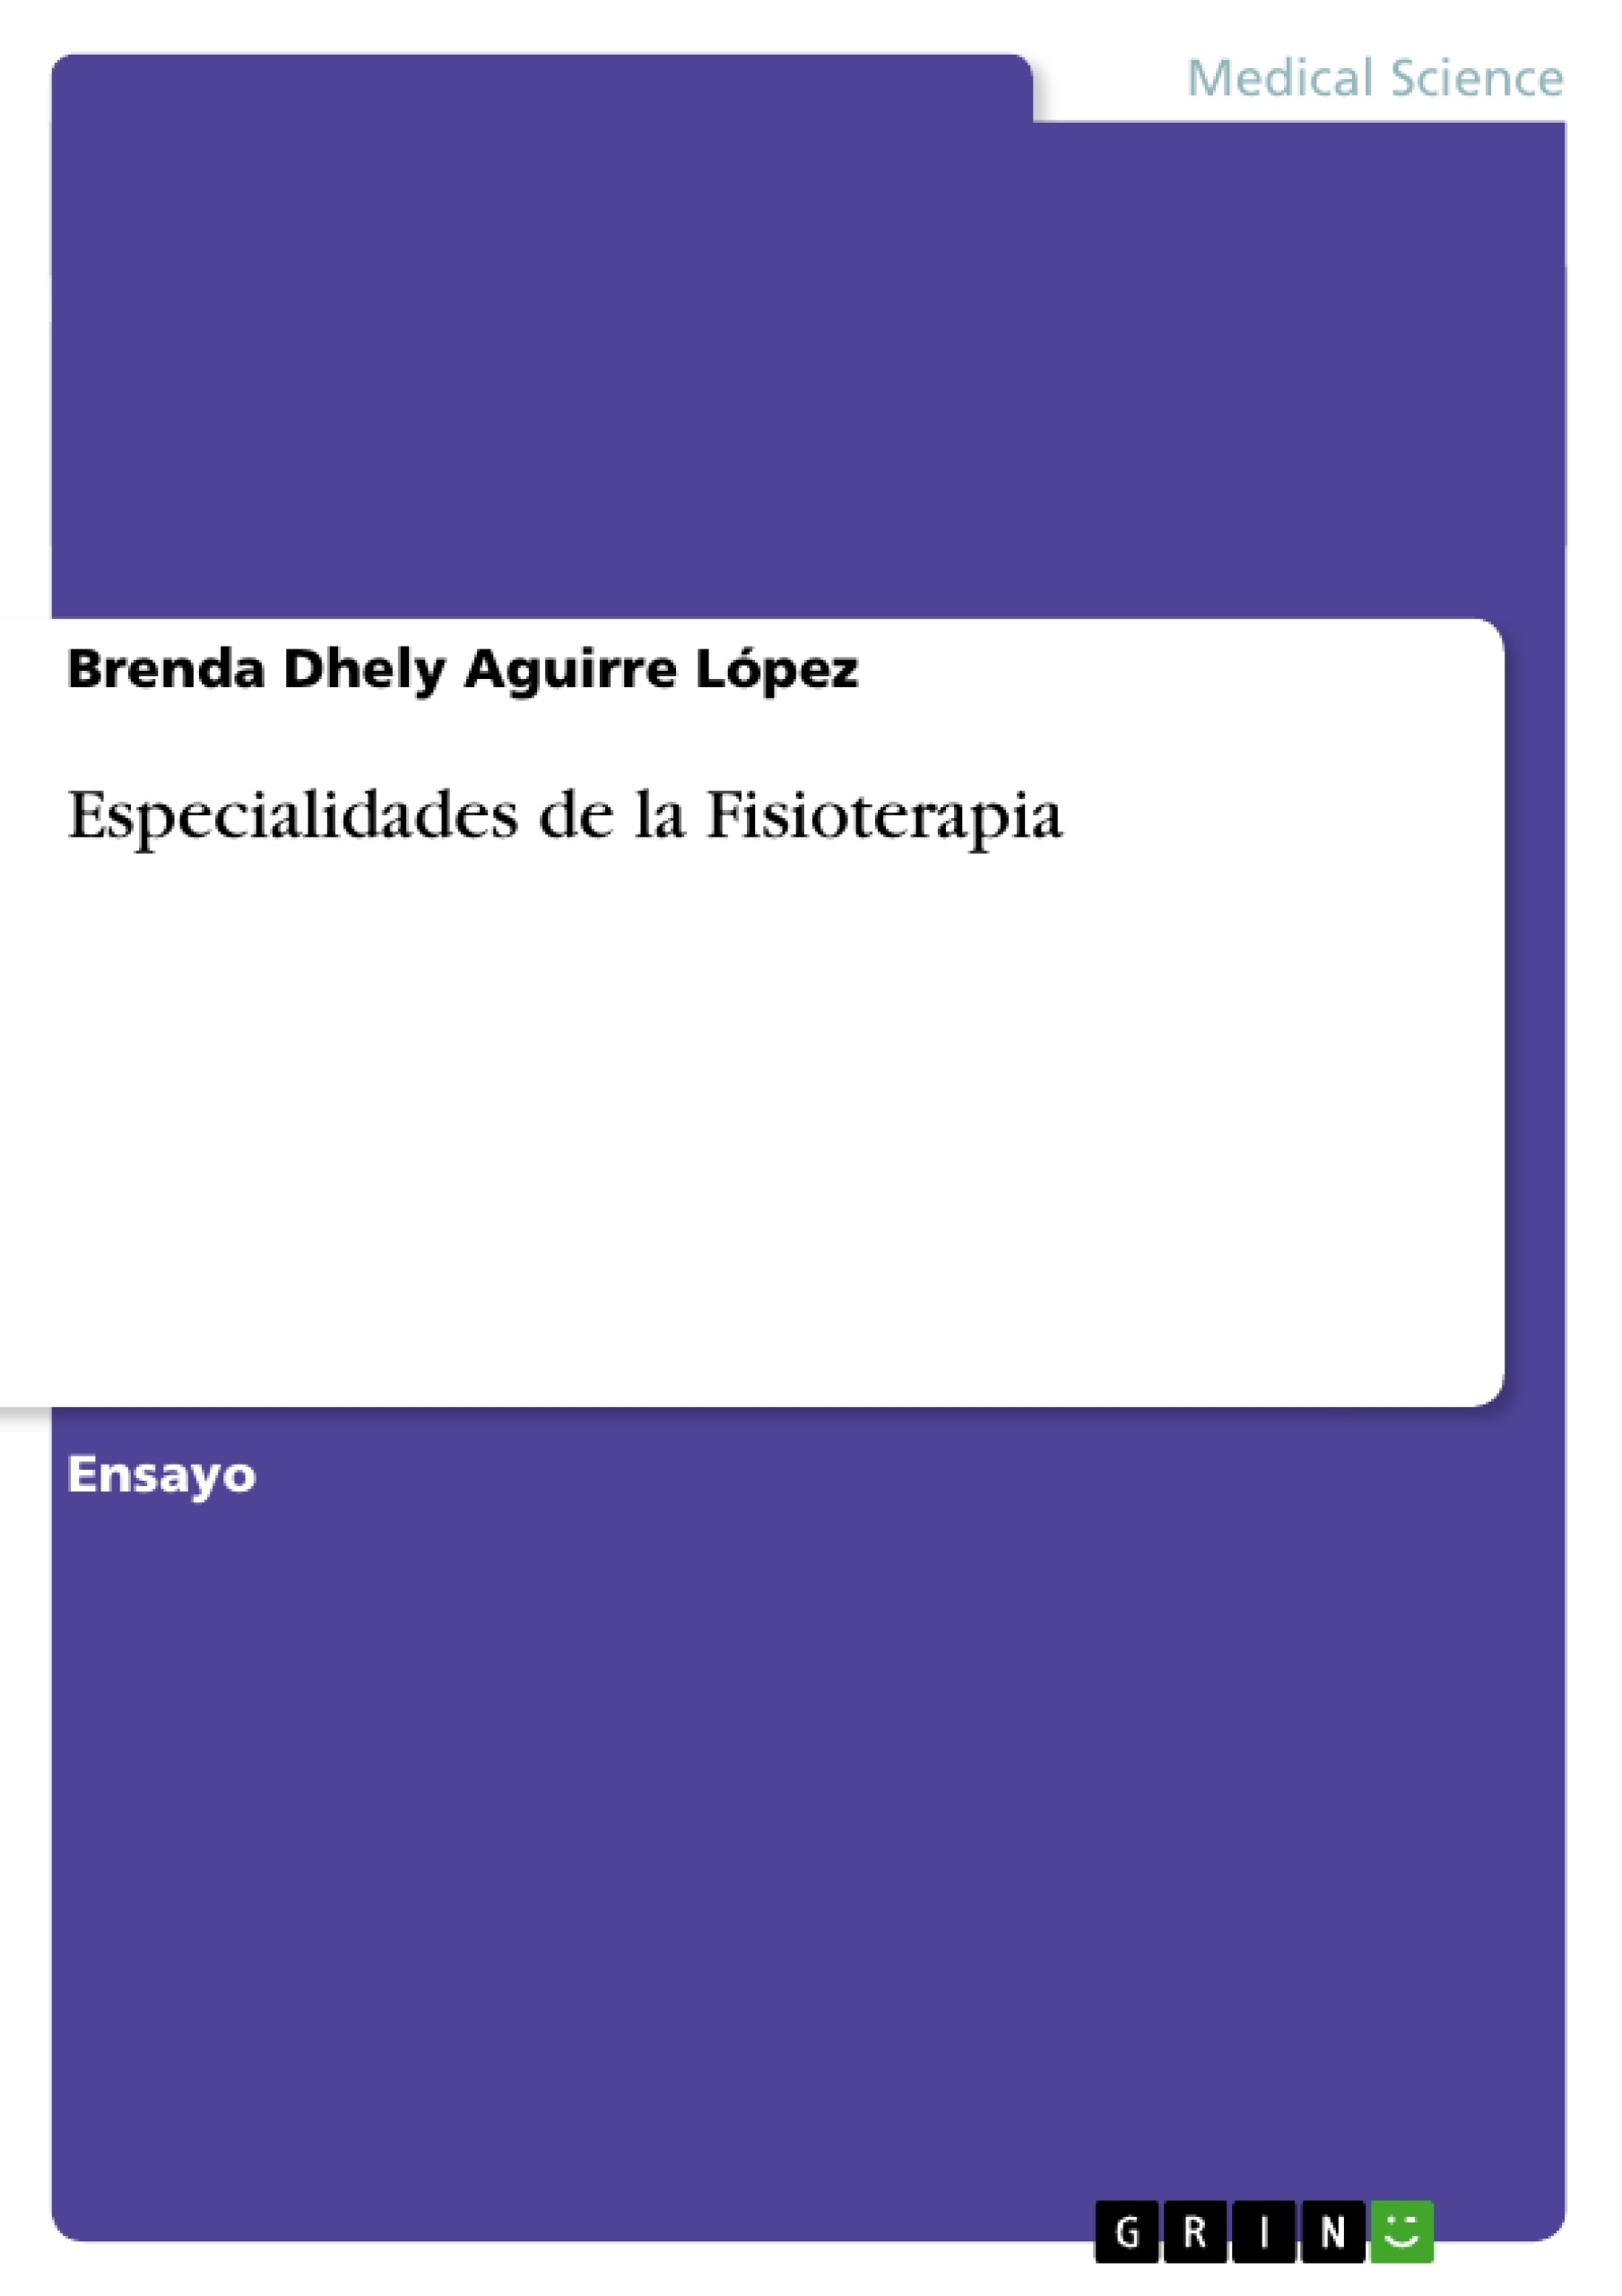 Title: Especialidades de la Fisioterapia